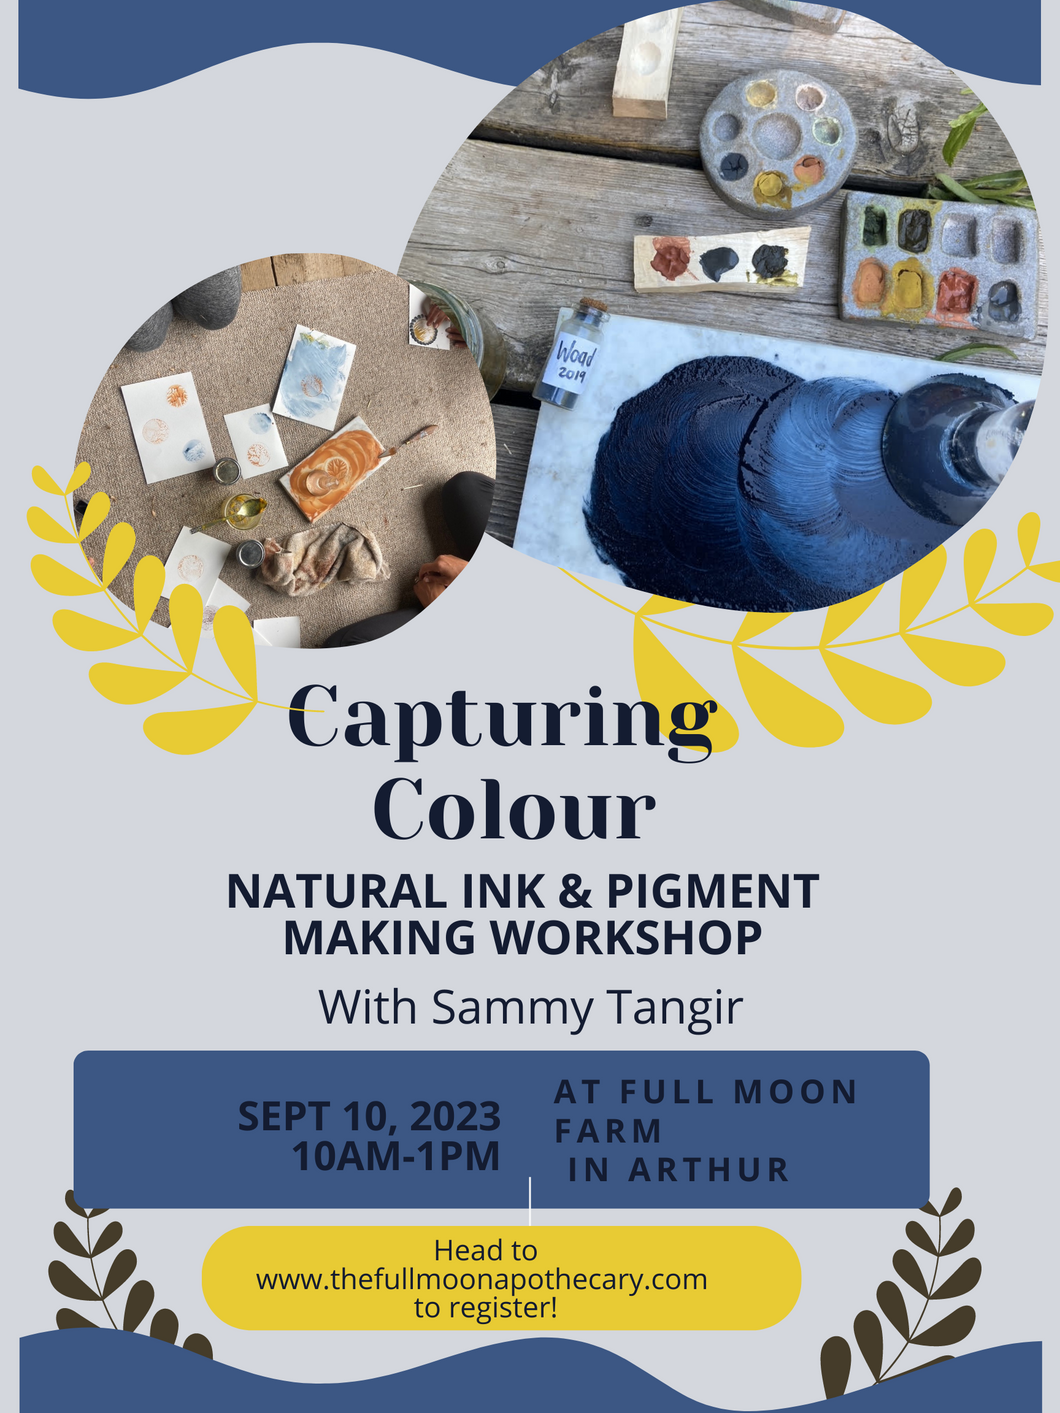 Capture Colour: Natural Ink & Pigment Making Workshop